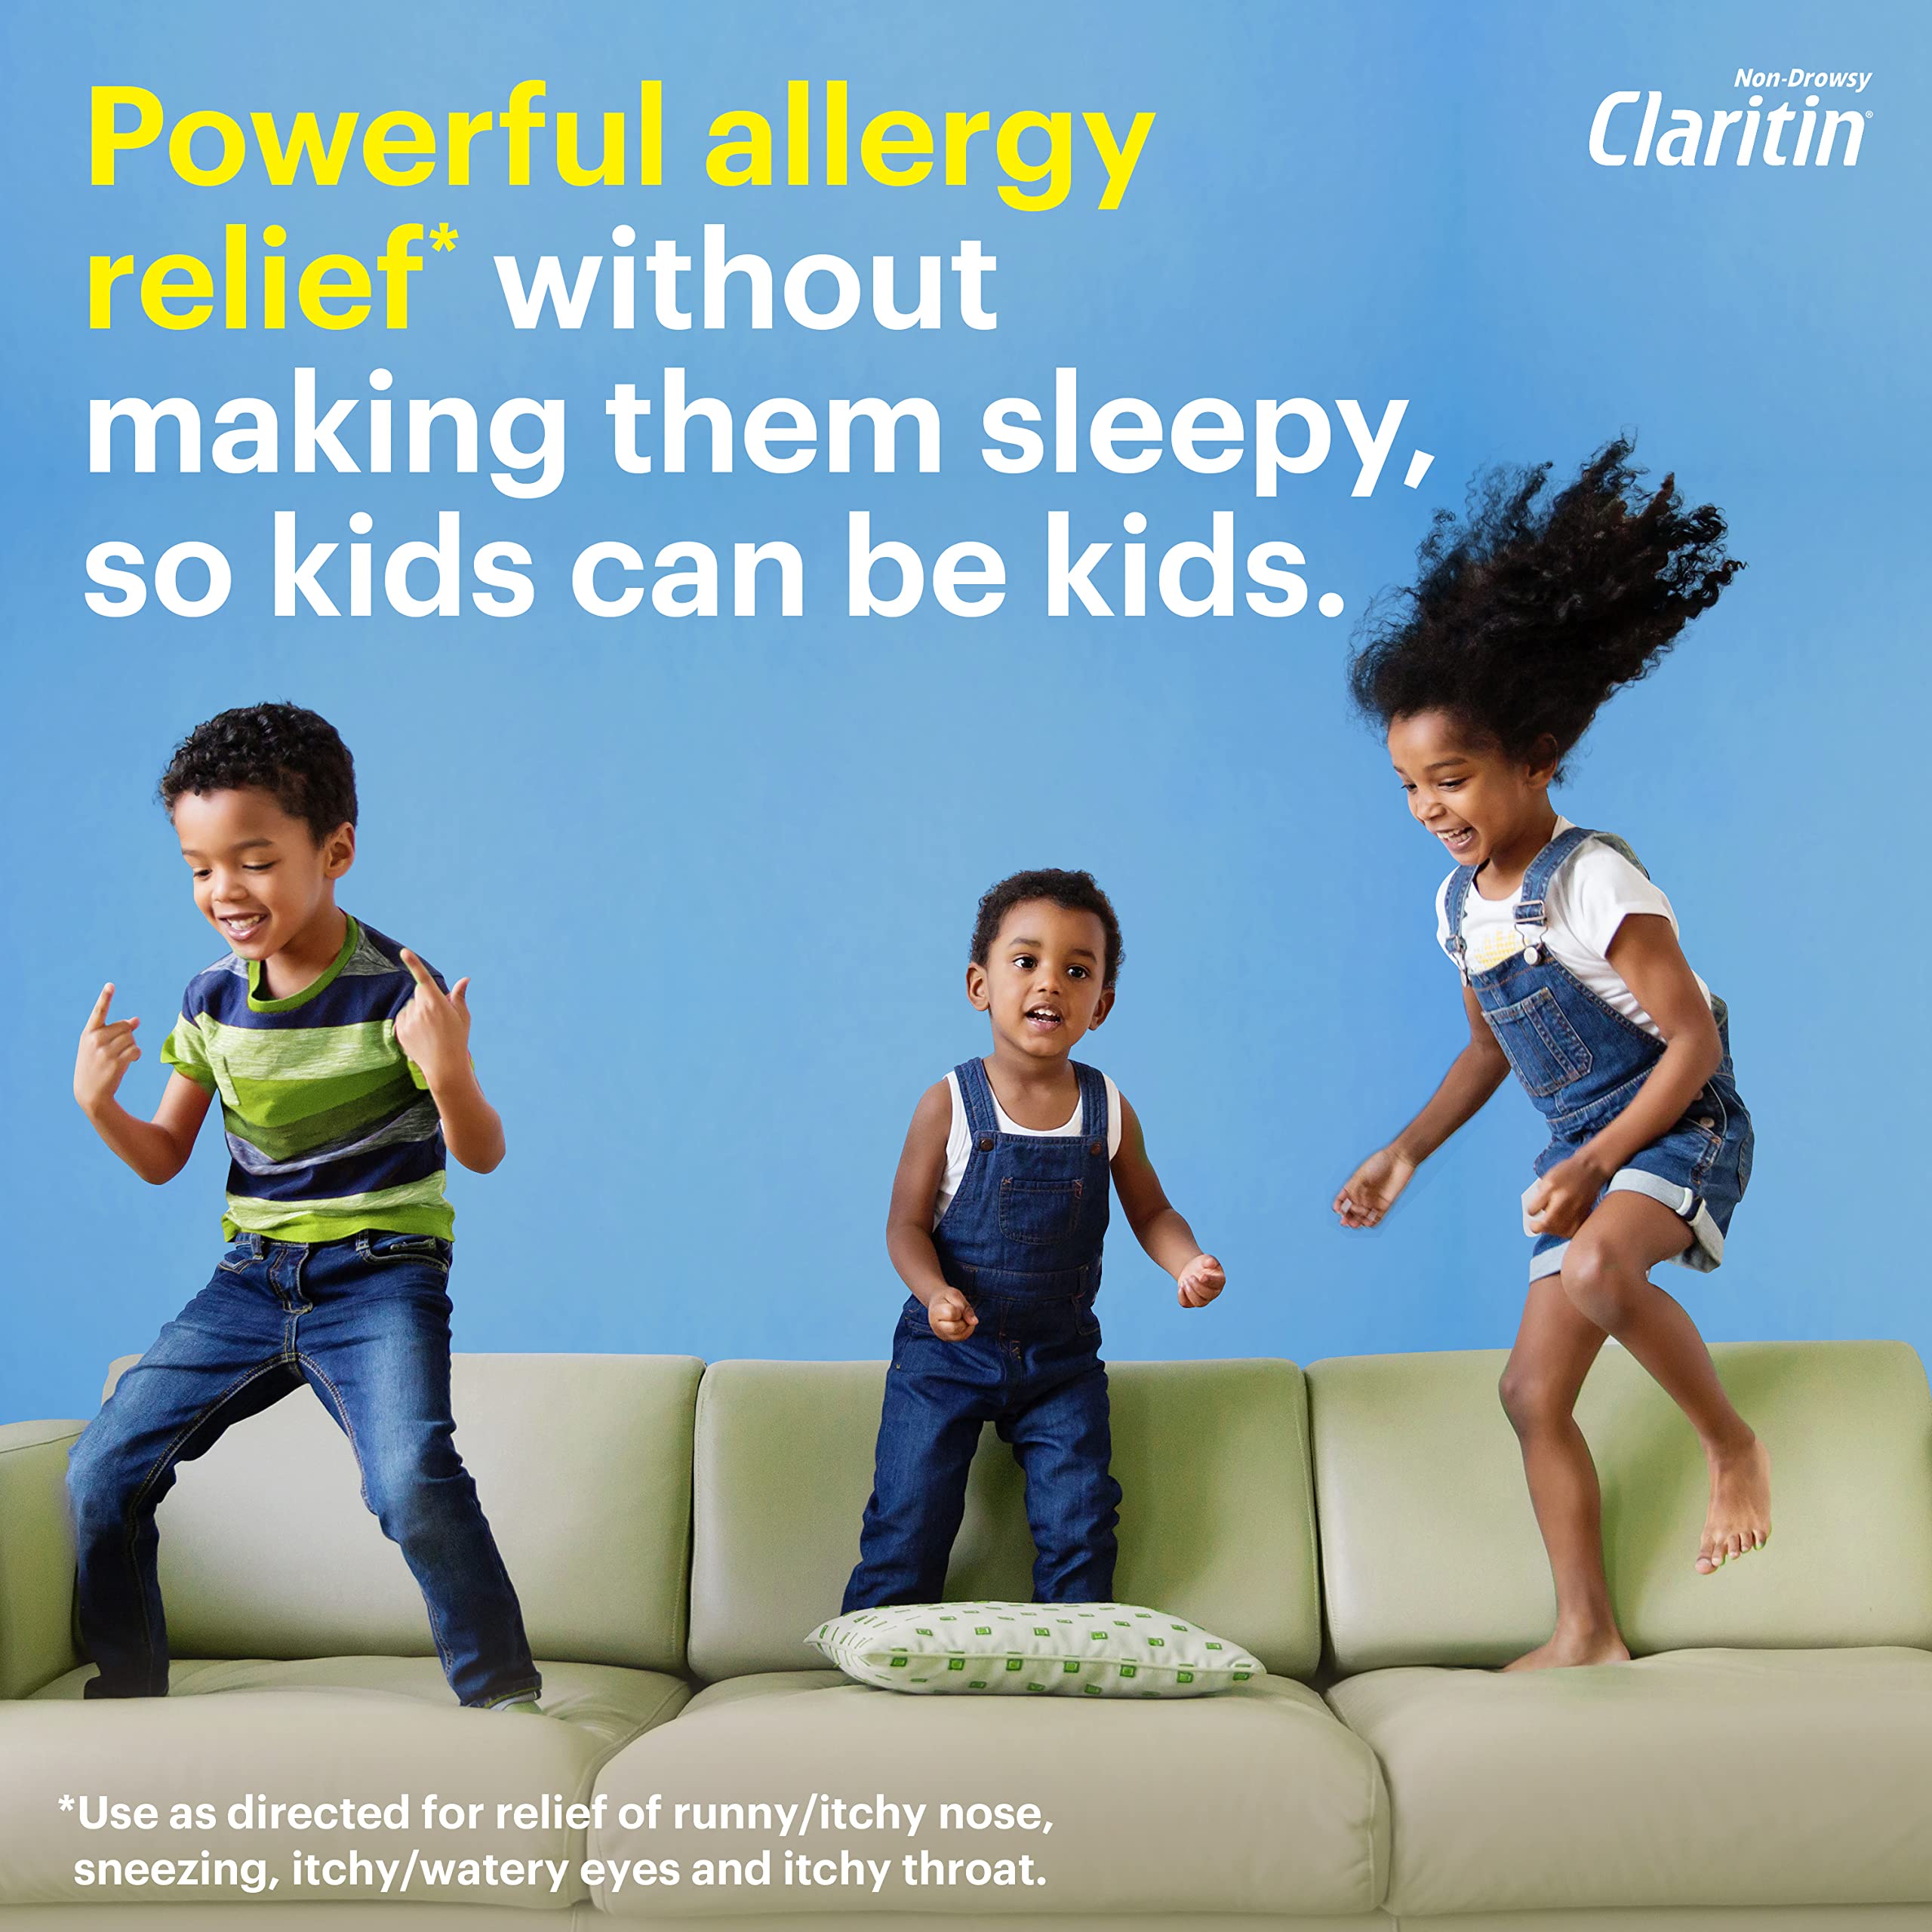 Children's Claritin Chewables 24 HR Children Allergy Medicine, Grape, 60 Count